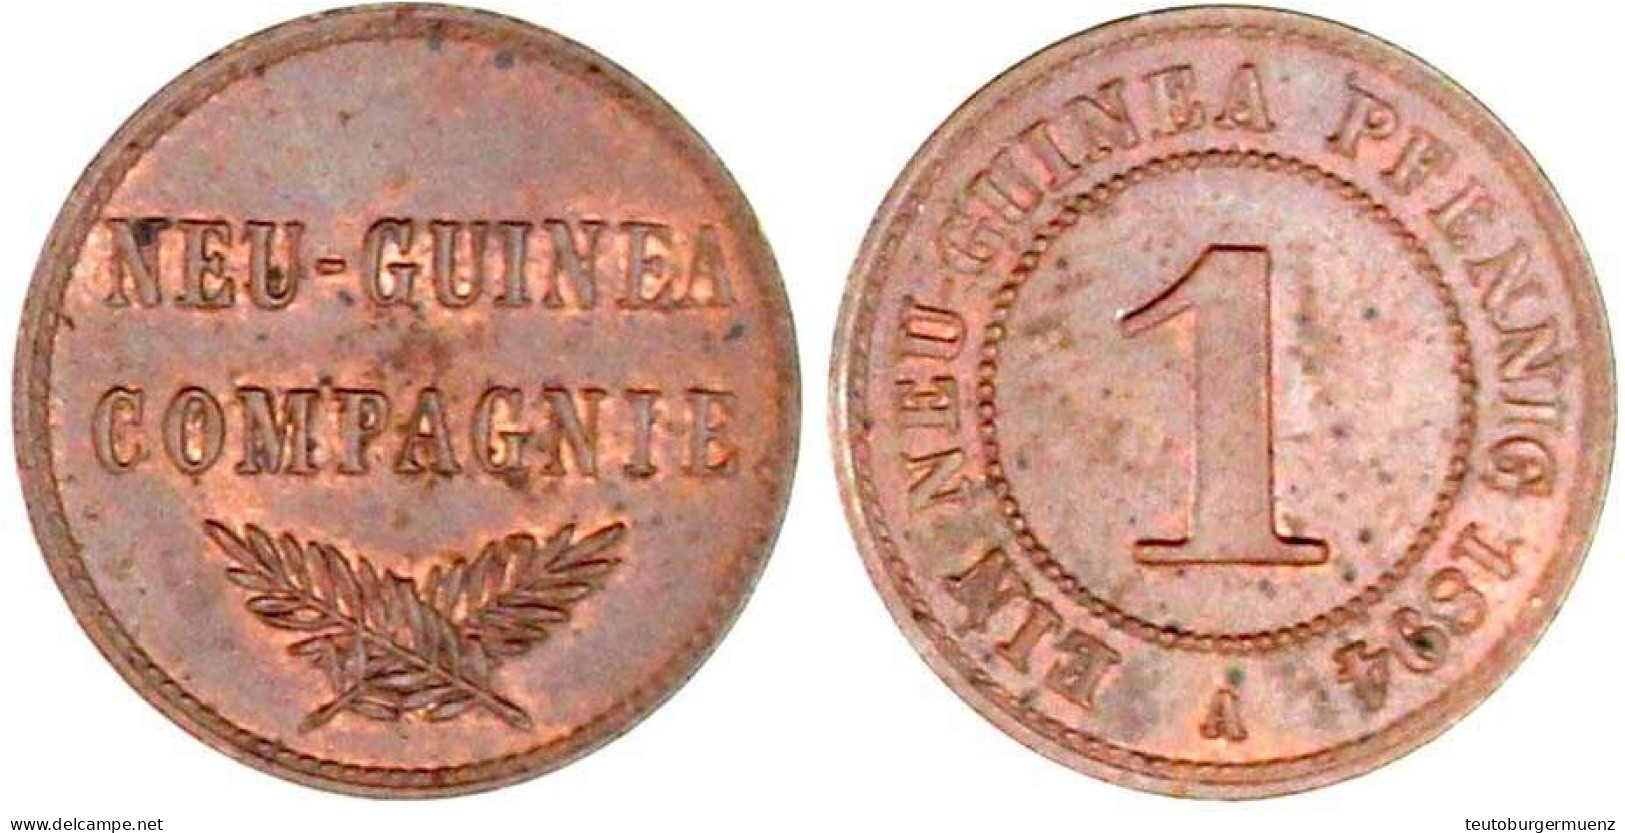 1 Neuguinea Pfennig 1894 A. Vorzüglich/Stempelglanz. Jaeger 701. - Deutsch-Neuguinea